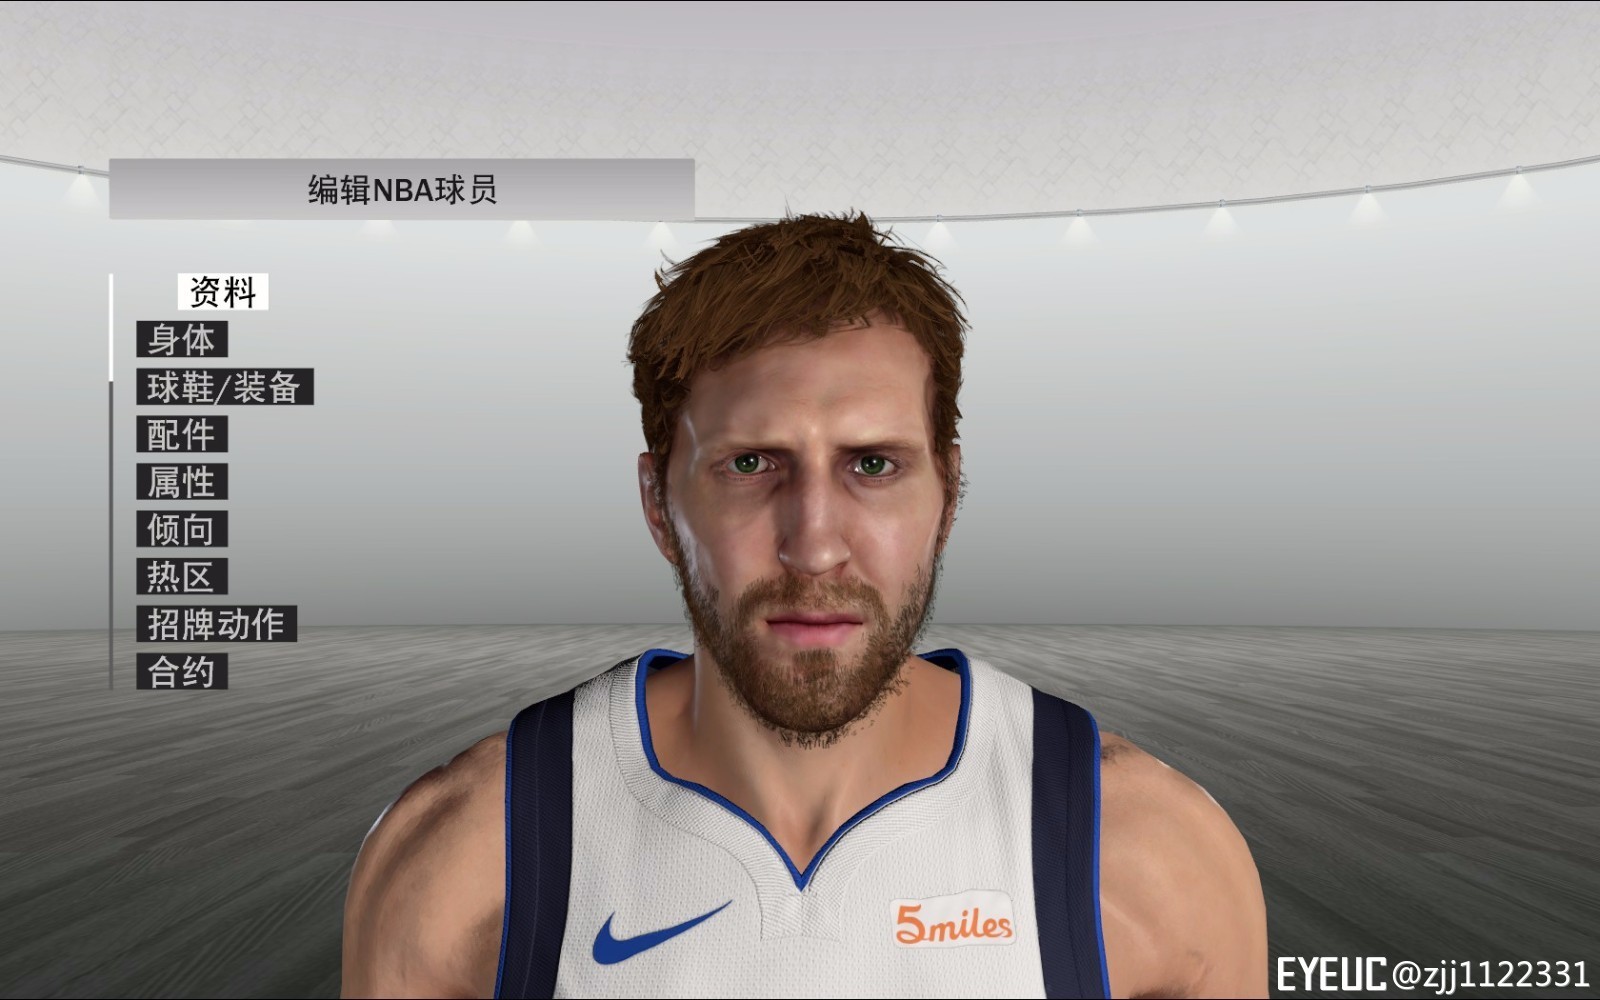 NBA 2K19 Dirk Nowitzki Cyberface